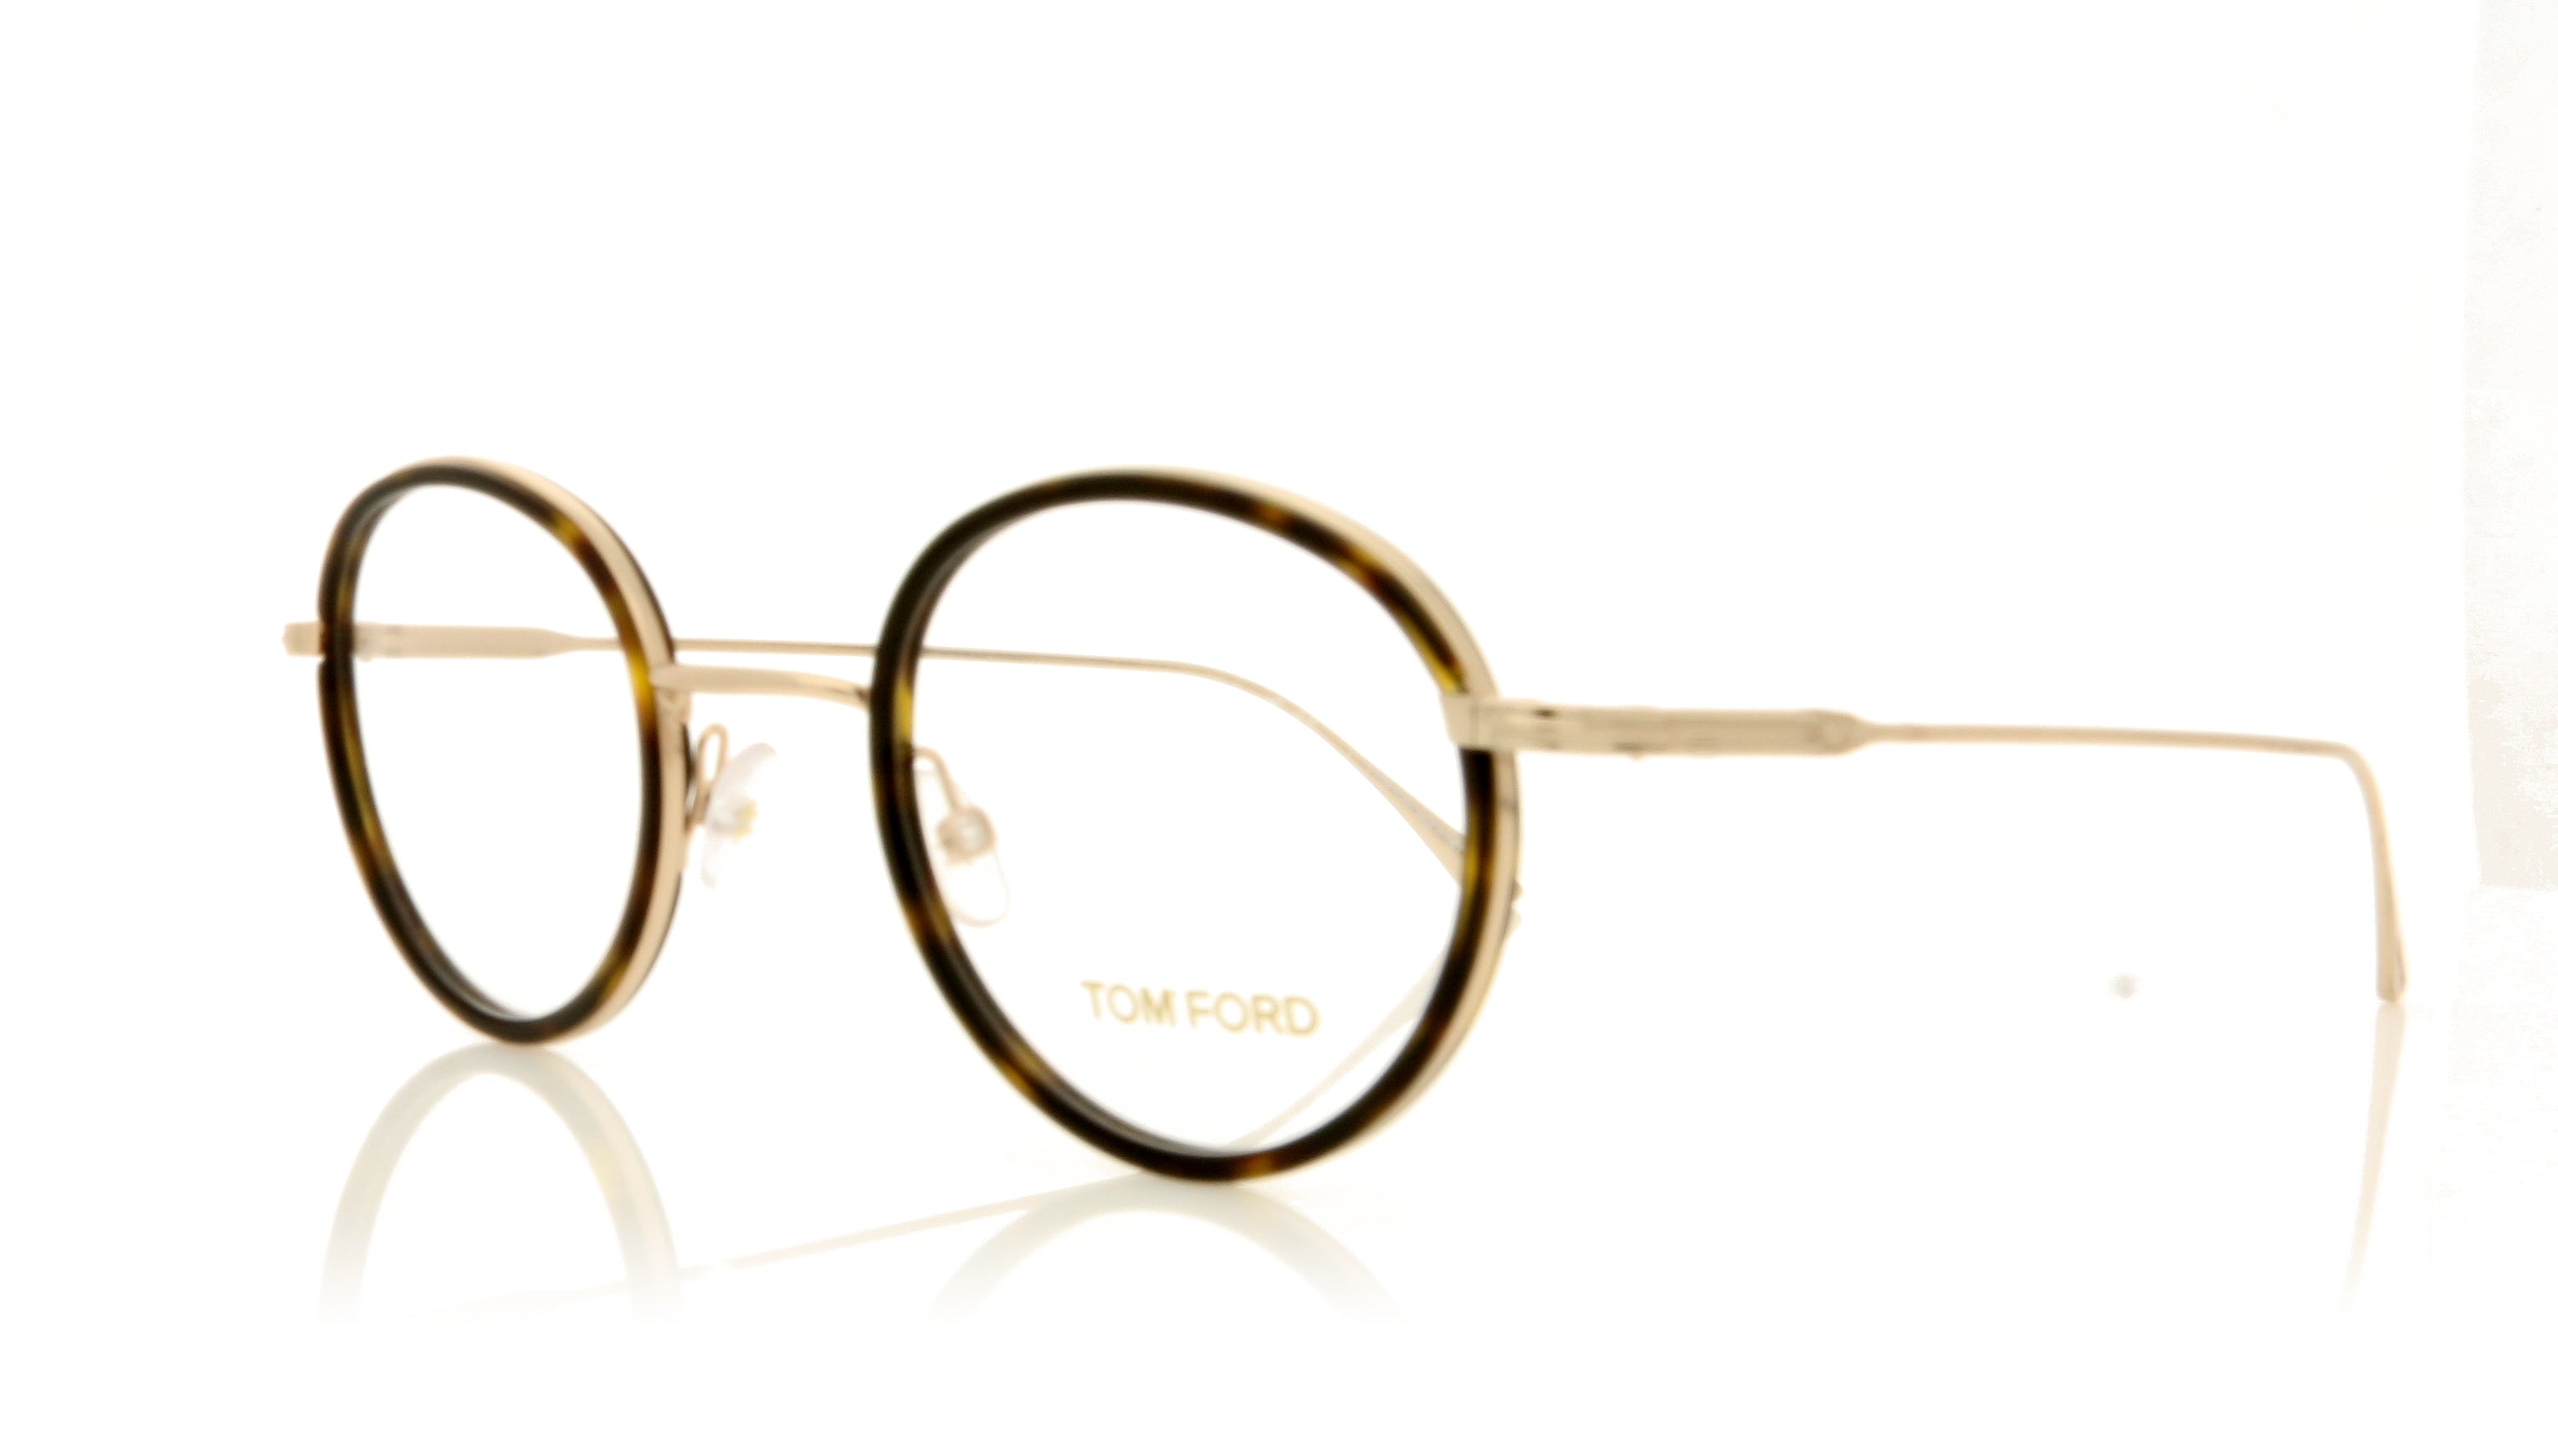 Tom Ford Tom Ford TF5521 52 Gold Glasses